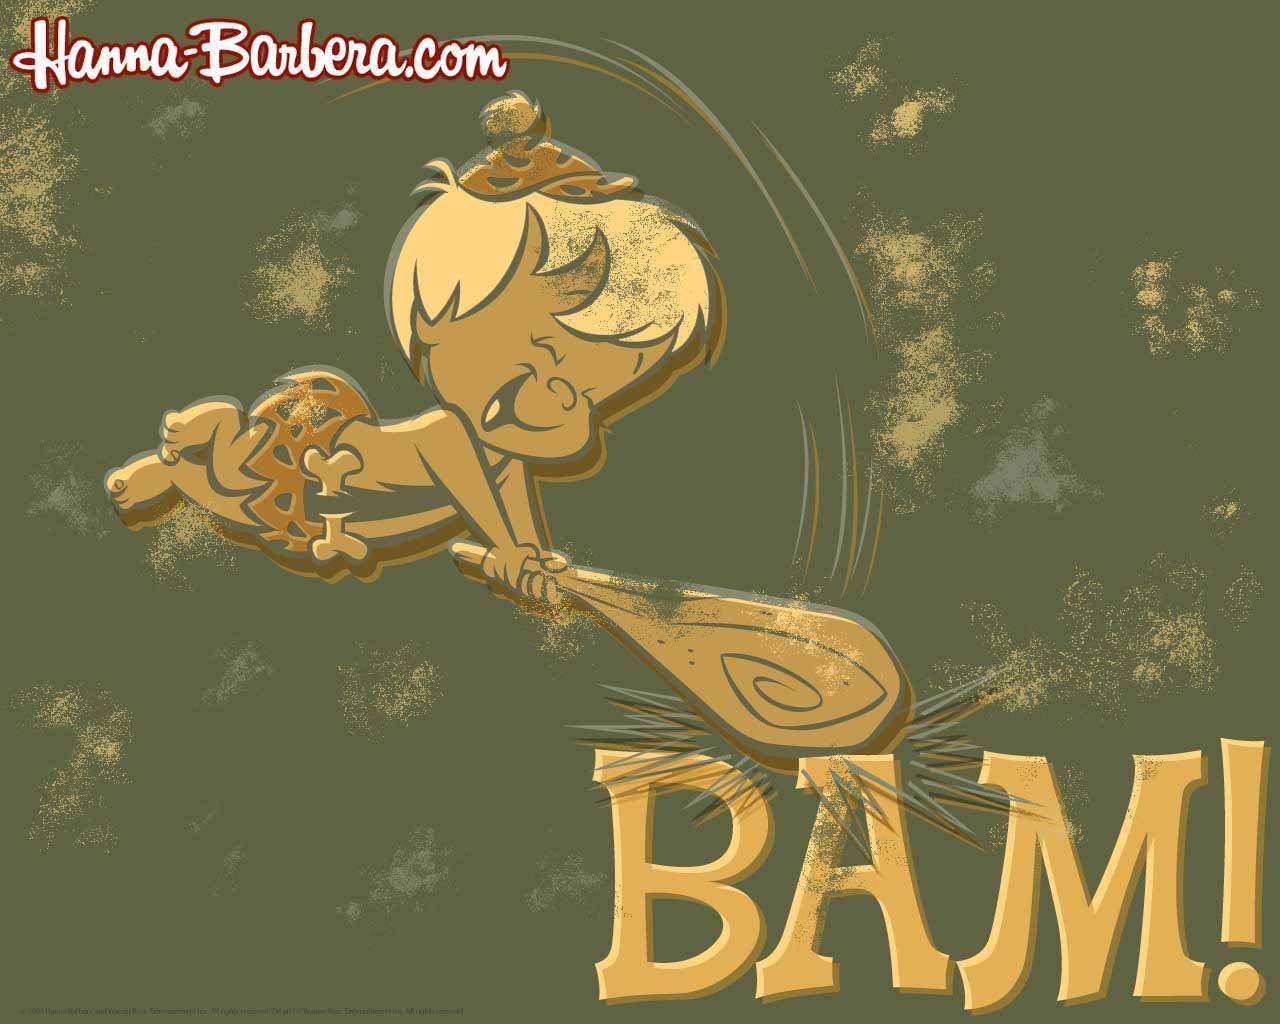 Bamm-Bamm Wallpaper - The Flintstones Wallpaper (5421843) - Fanpop